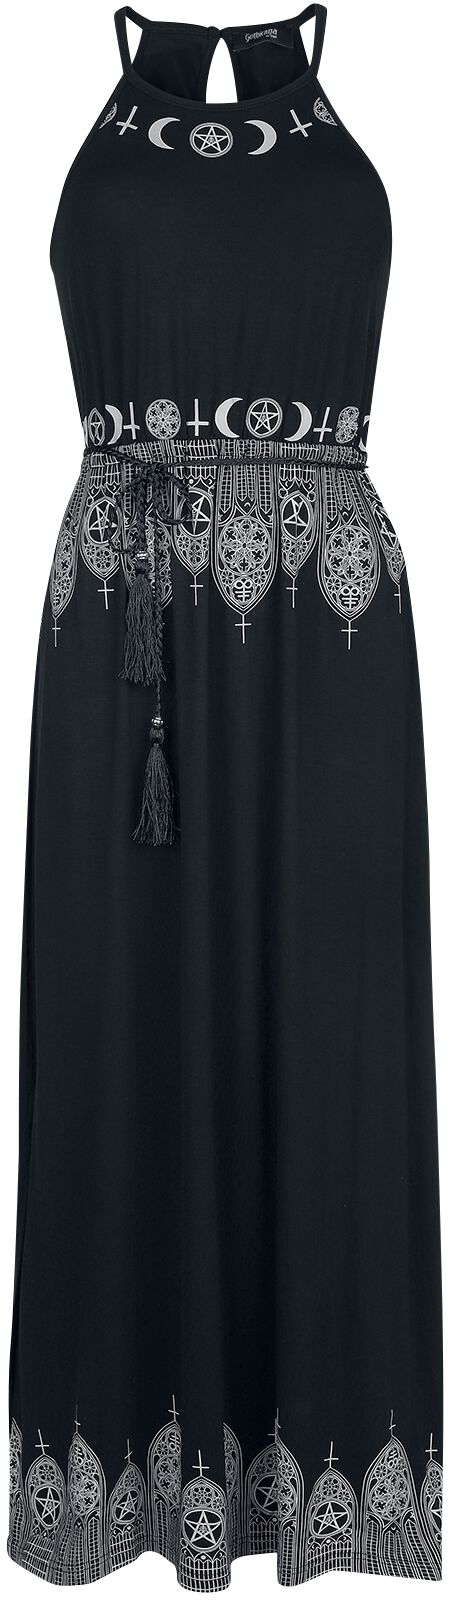 Gothicana by EMP - Gothic Kleid lang - Schwarzes Maxikleid mit Prints und schmalem Bindegürtel - S bis 5XL - für Damen - Größe 3XL - schwarz